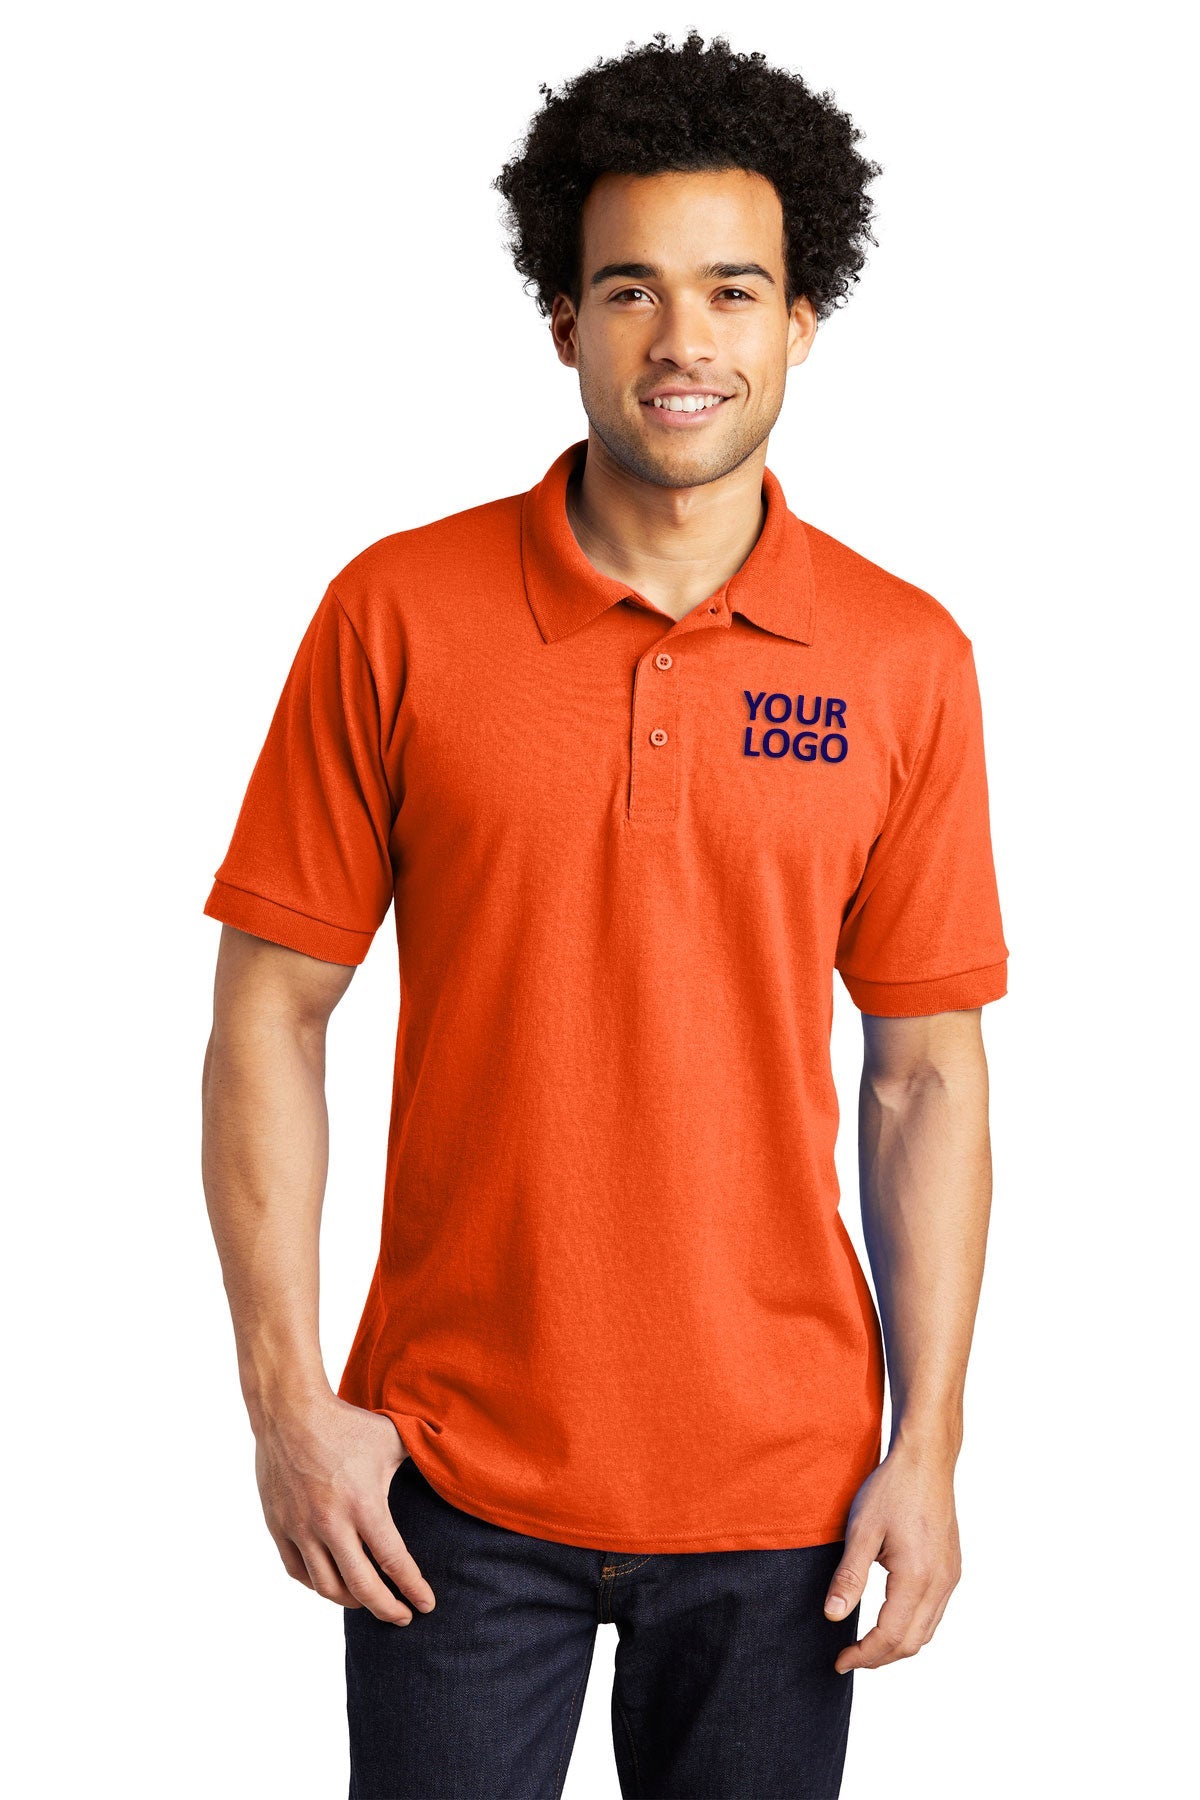 Port & Company Tall Jersey Knit Branded Polos, Safety Orange